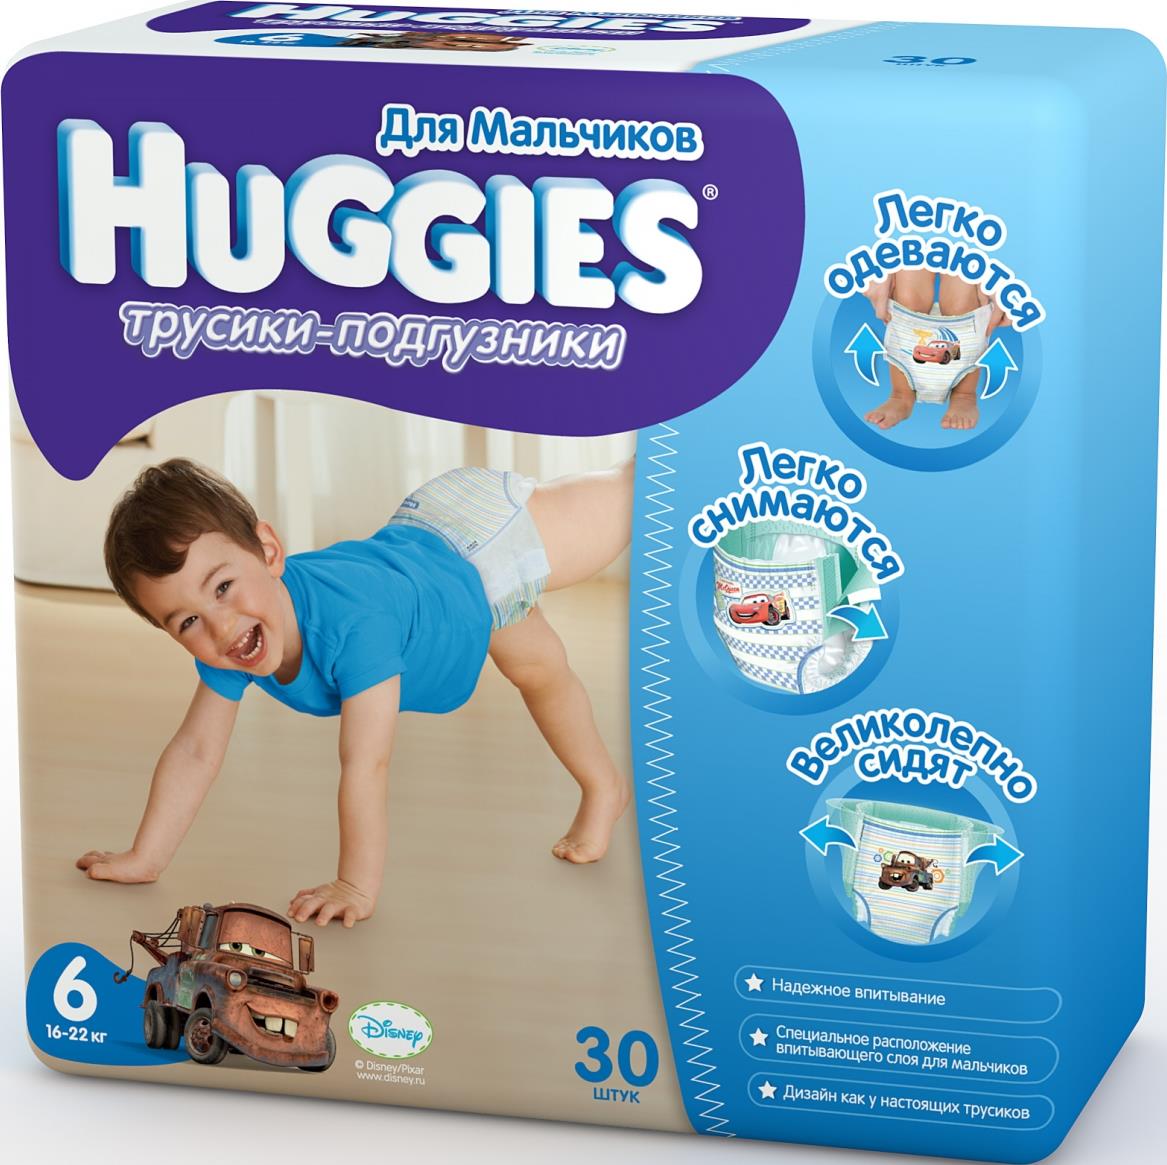 Трусики-подгузники Huggies для мальчиков 6 (6-22 кг)